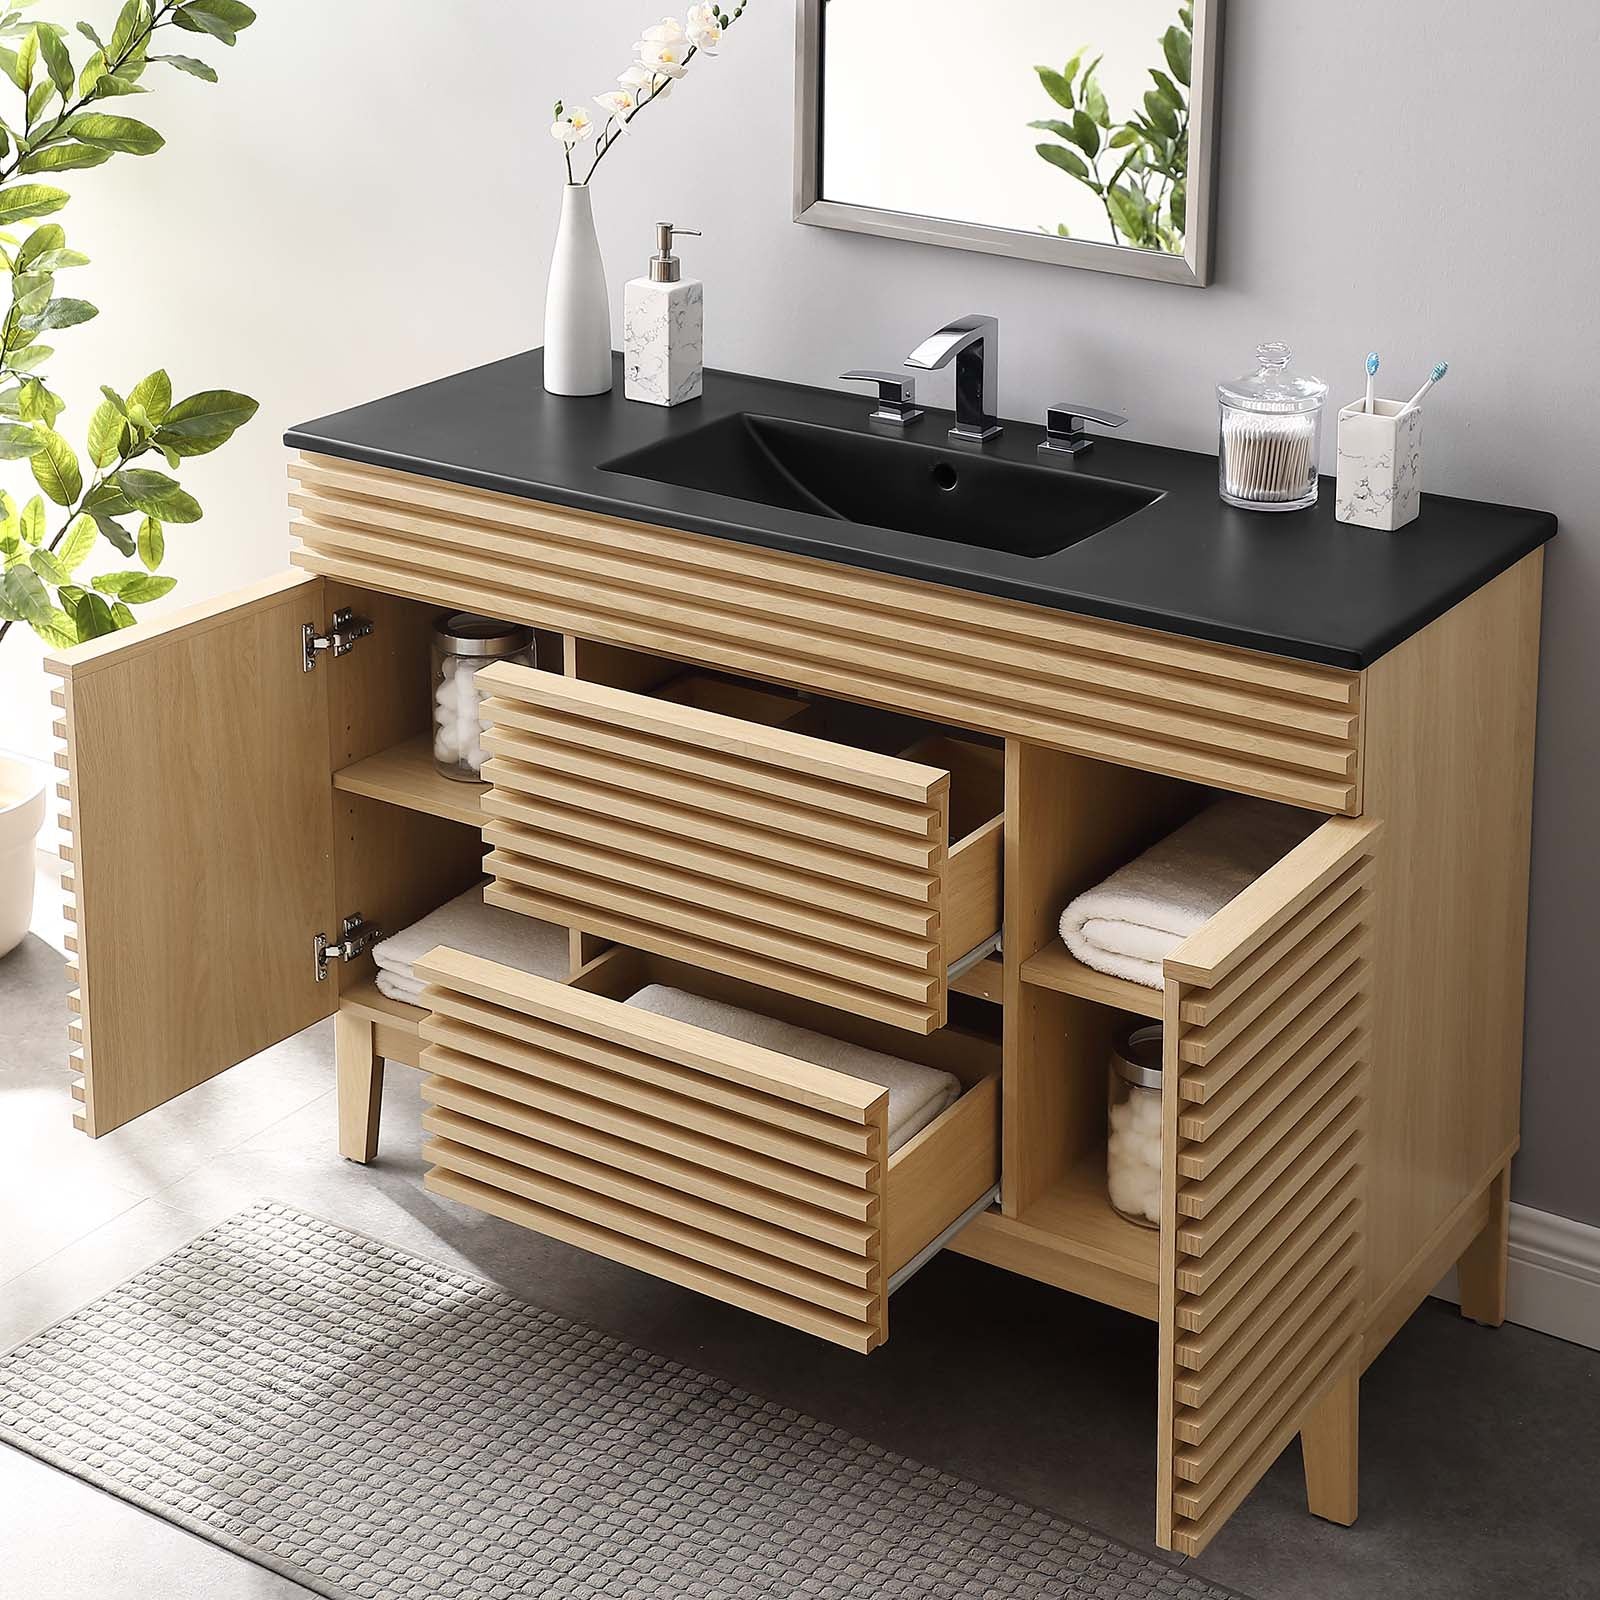 Render 48" Single Sink Bathroom Vanity-Bathroom Vanity-Modway-Wall2Wall Furnishings